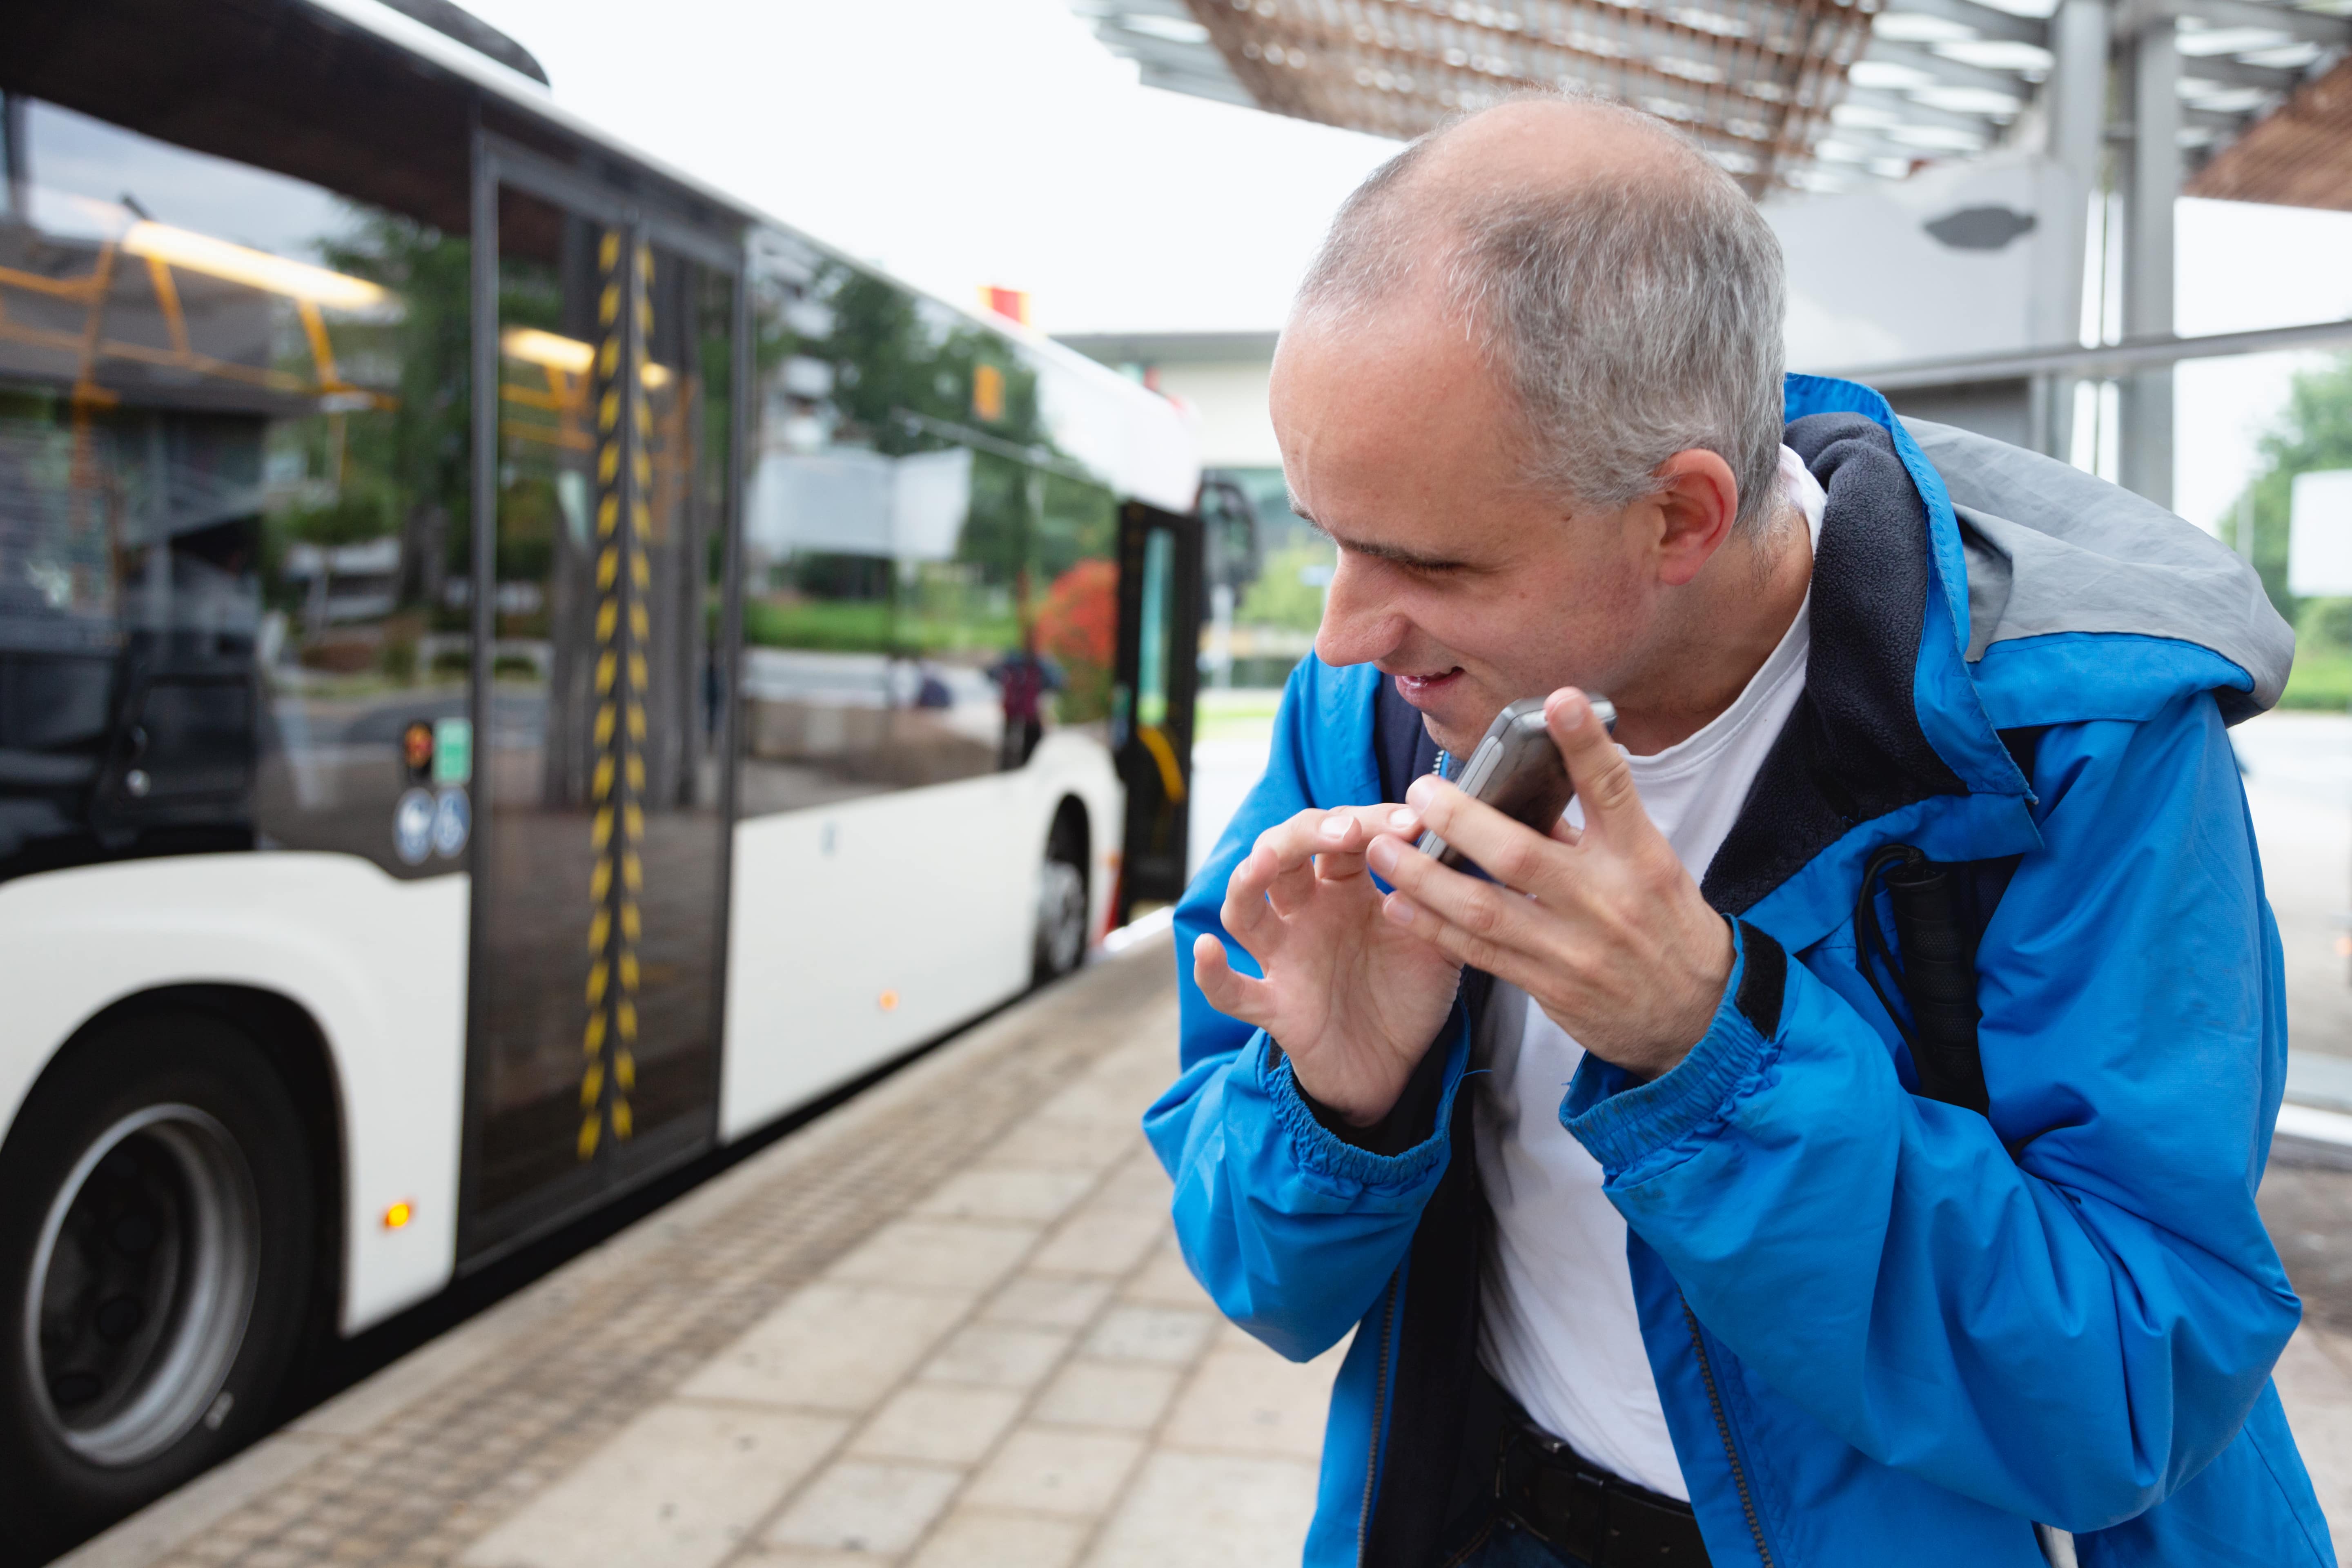 Un homme se tient près d’un autobus et touche son téléphone portable en l’écoutant.